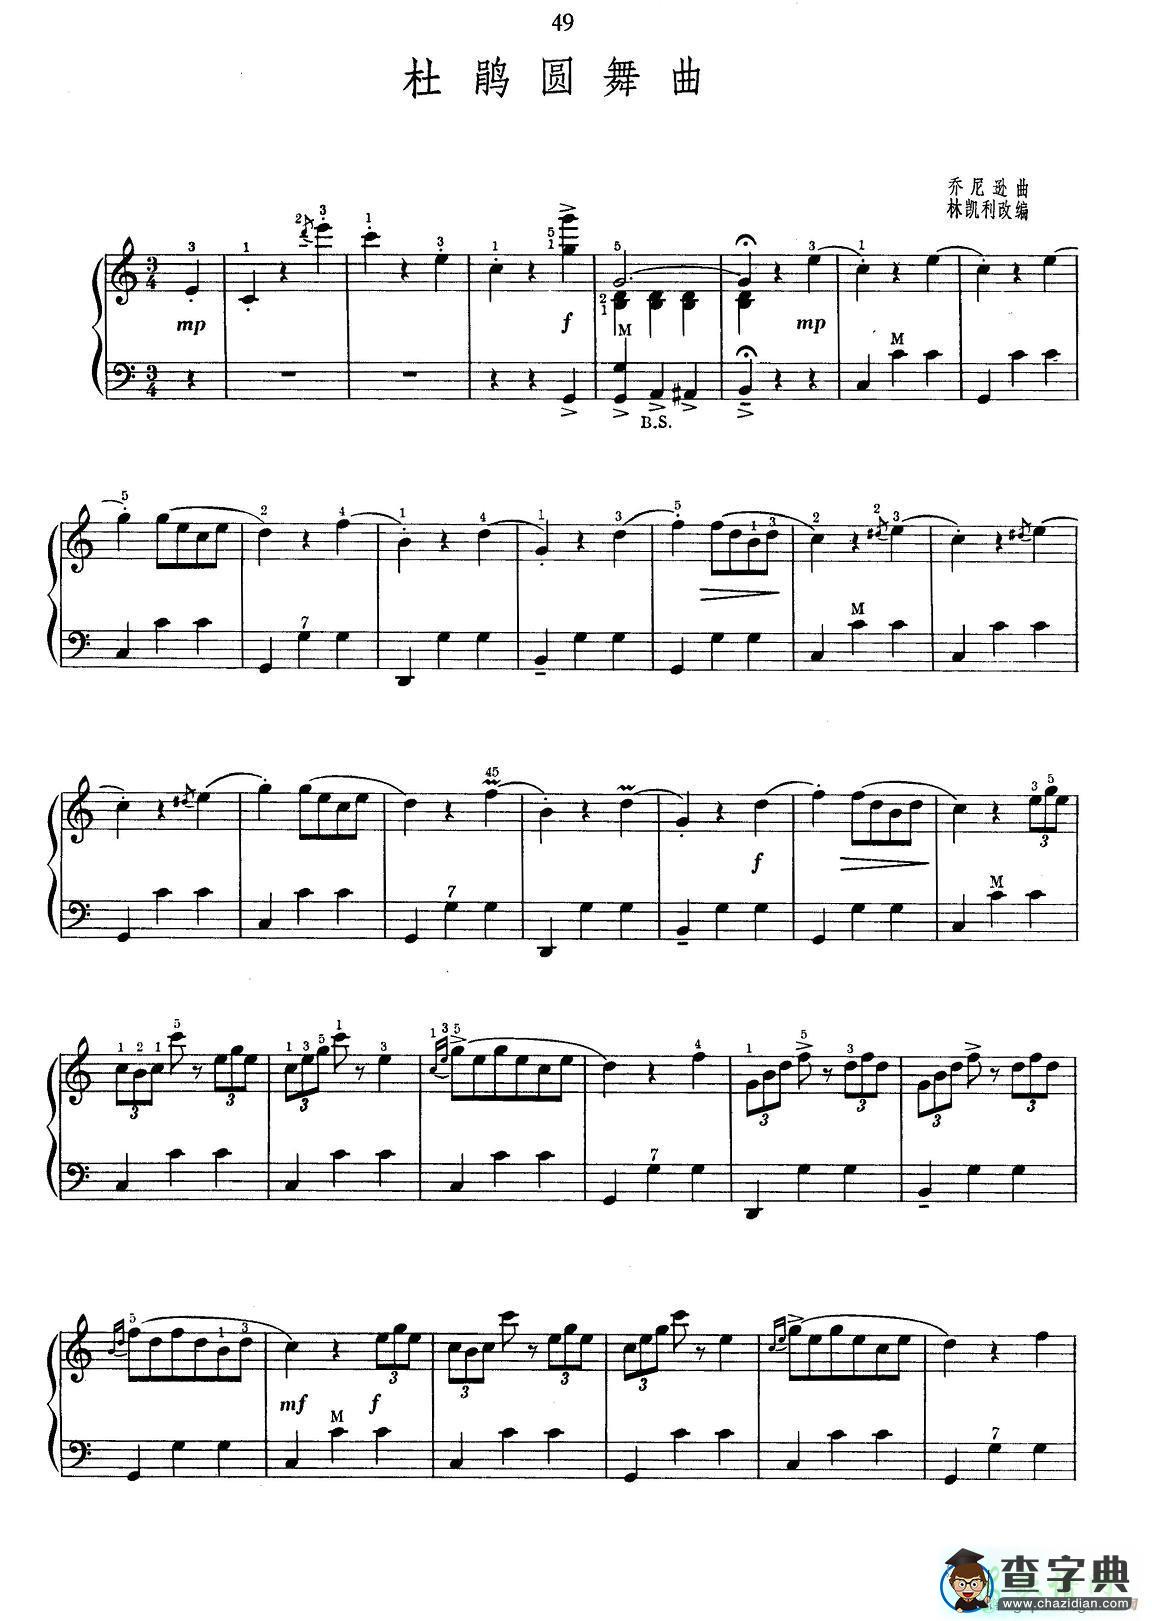 肖斯塔科维奇《第二爵士圆舞曲》手风琴谱-琴谱下载-朝刚手风琴网